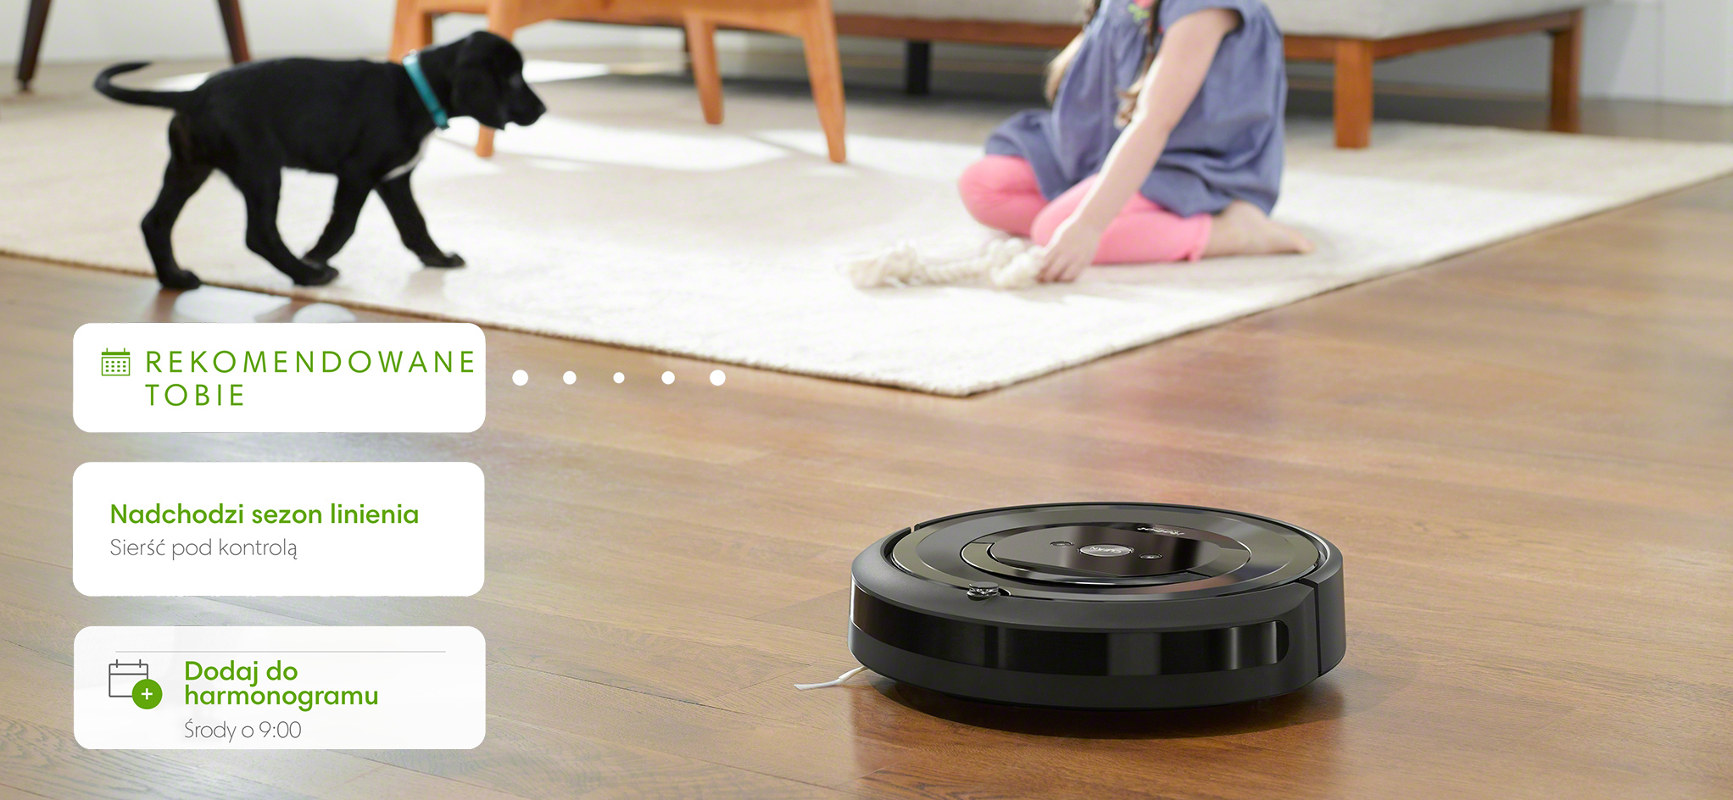 iRobot Roomba e5 i pokazanie możliwości aplikacji iRobot HOME